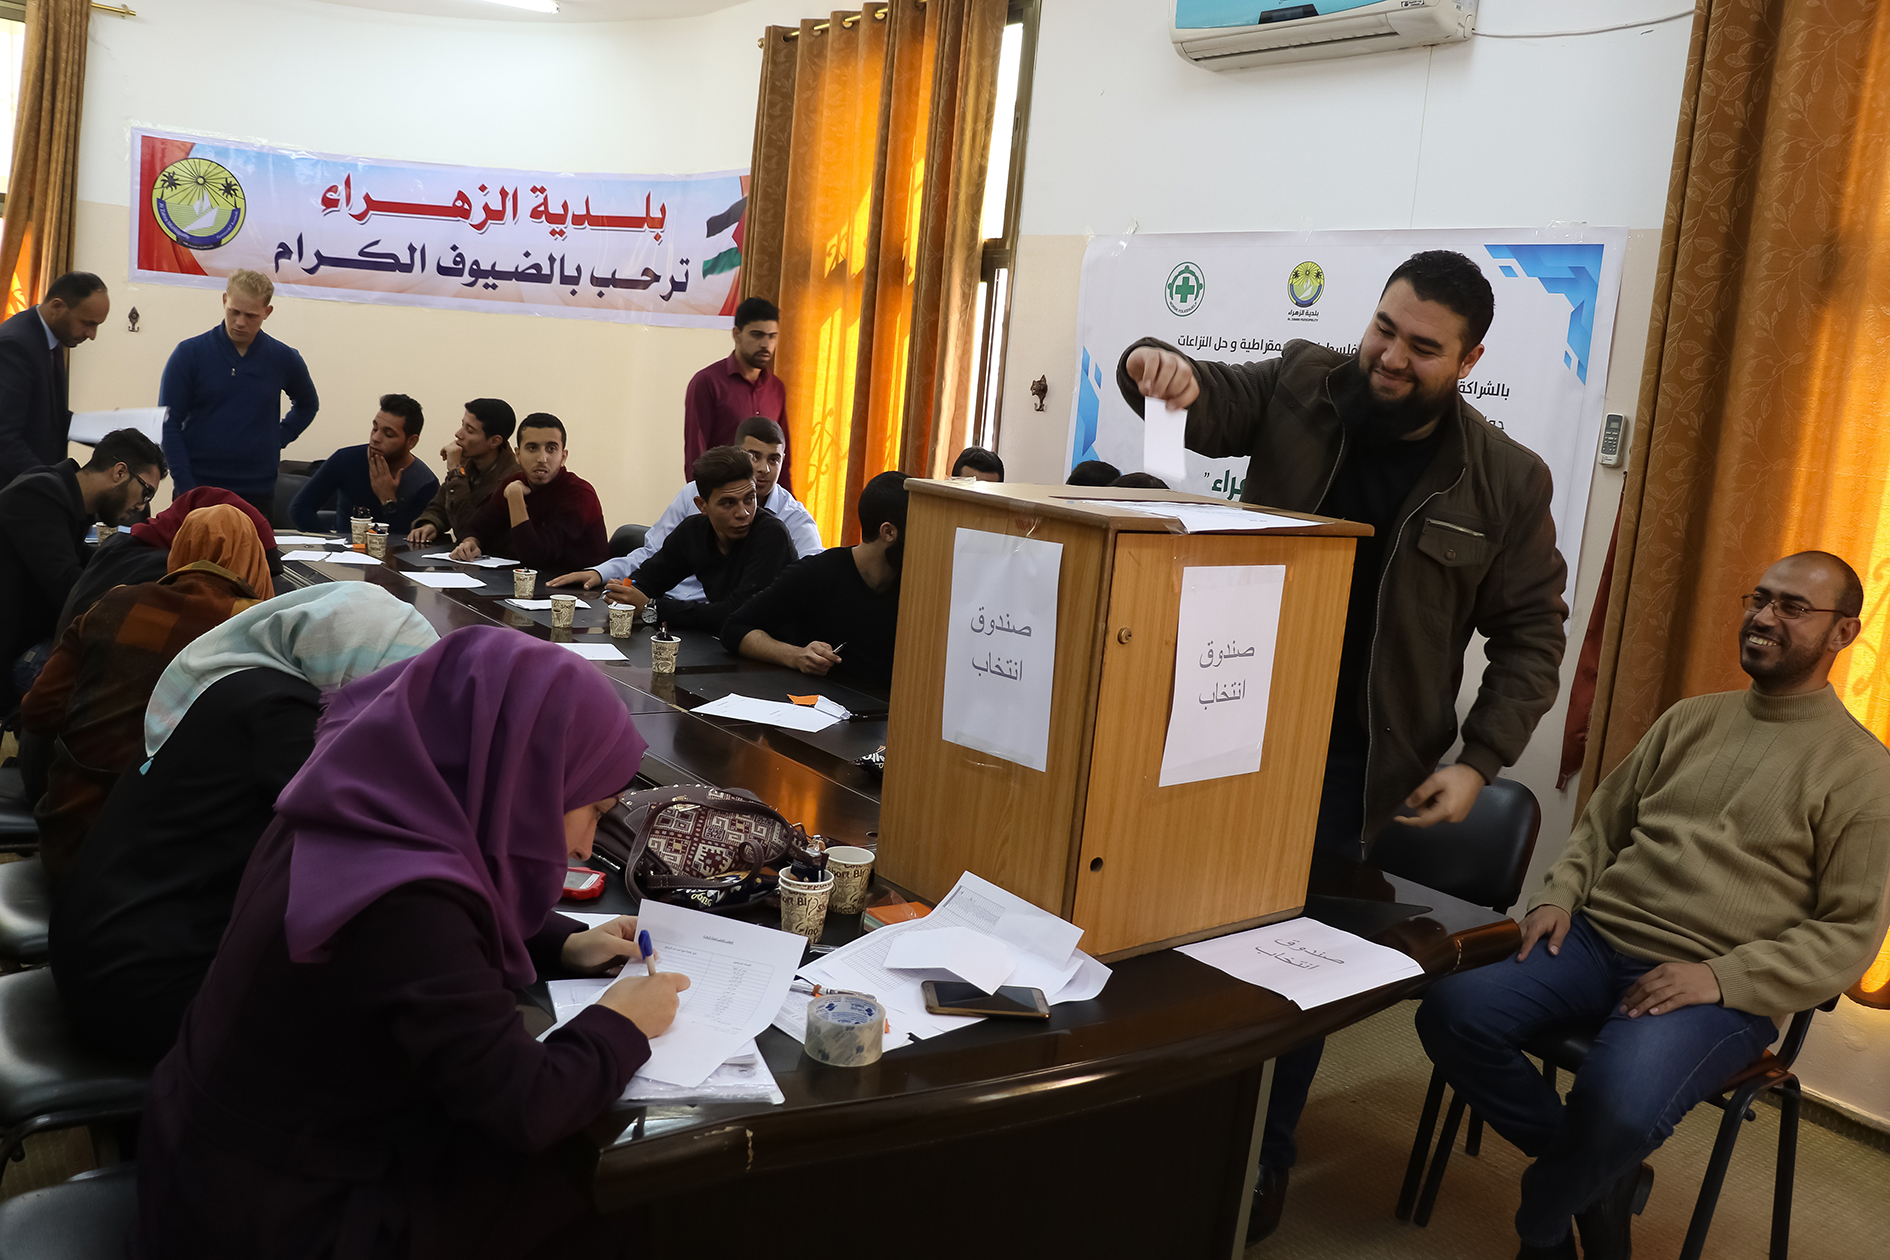 الأول من نوعه في قطاع غزة انتخاب 'المجلس الشبابي المحلي لبلدية الزهراء'